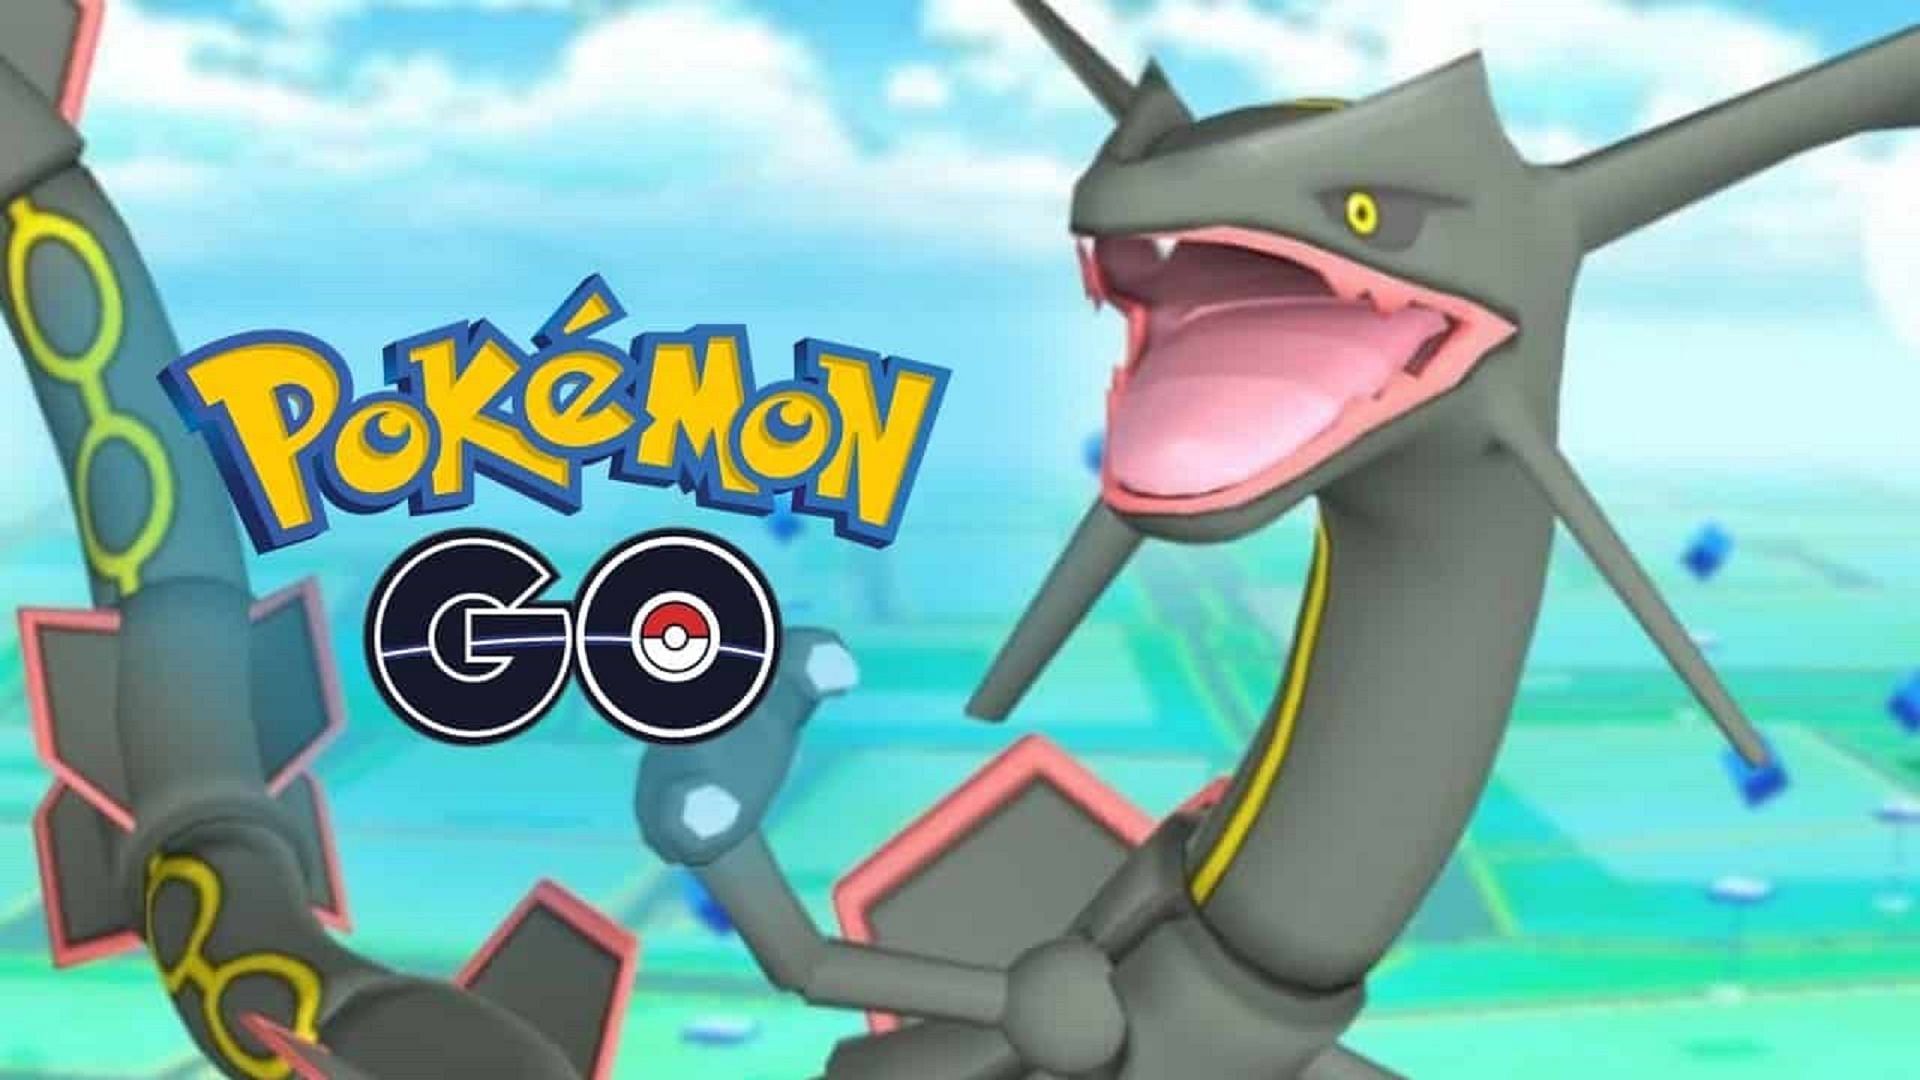 Pokémon Go - Shiny Rayquaza - P T”C have 80k stradust - Available